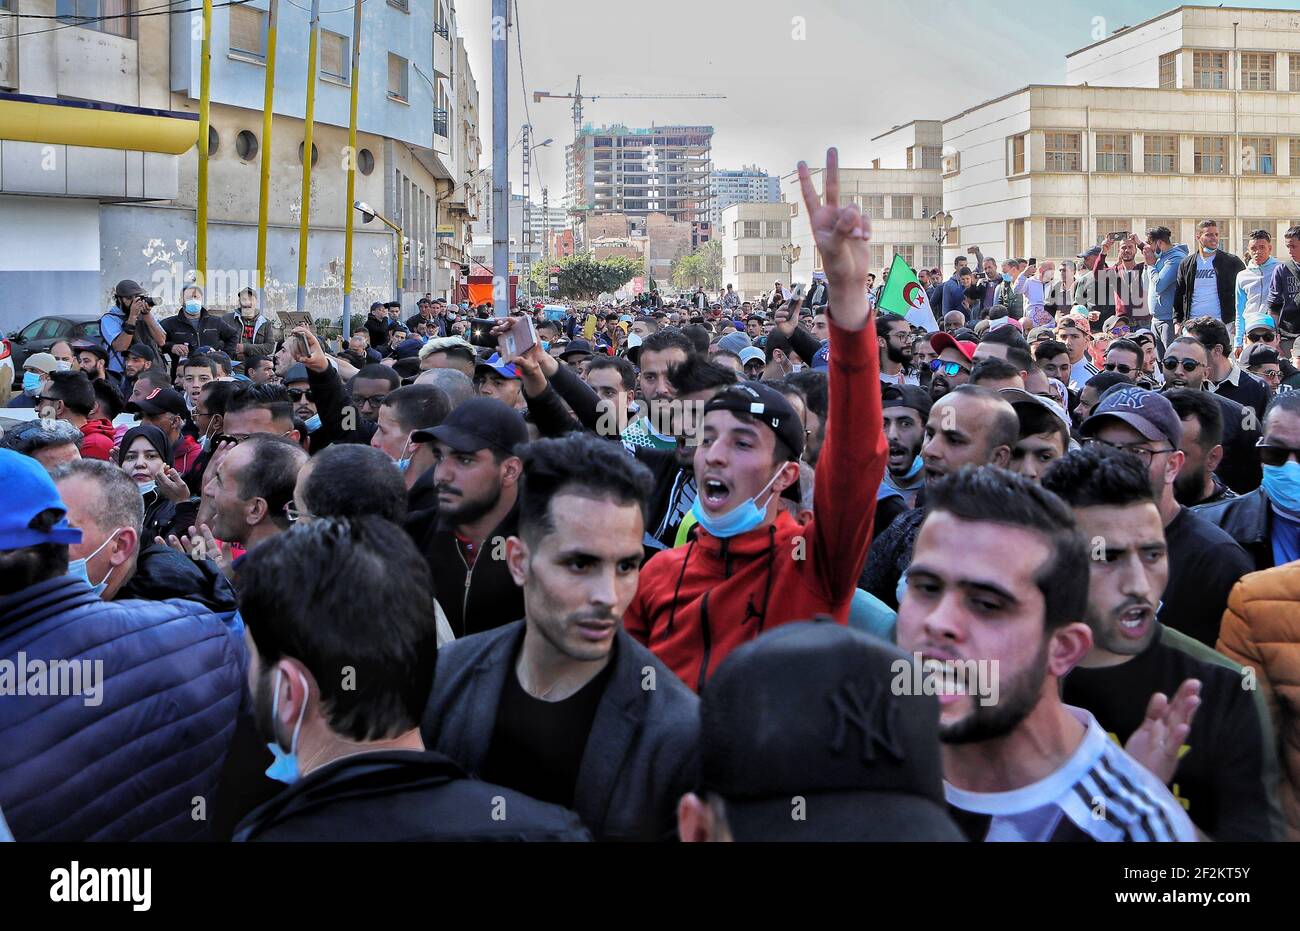 Le peuple algérien est parti, en soulevant des slogans et en exigeant la chute des symboles du régime actuel. Certains manifestants ont été empêchés d'atteindre le quartier général de la province d'Oran, dans l'ouest de l'Algérie, par la police algérienne. Oran le 12 mars 2021, Algérie. Photo de Hamza bouhara /ABACAPRESS.COM Banque D'Images